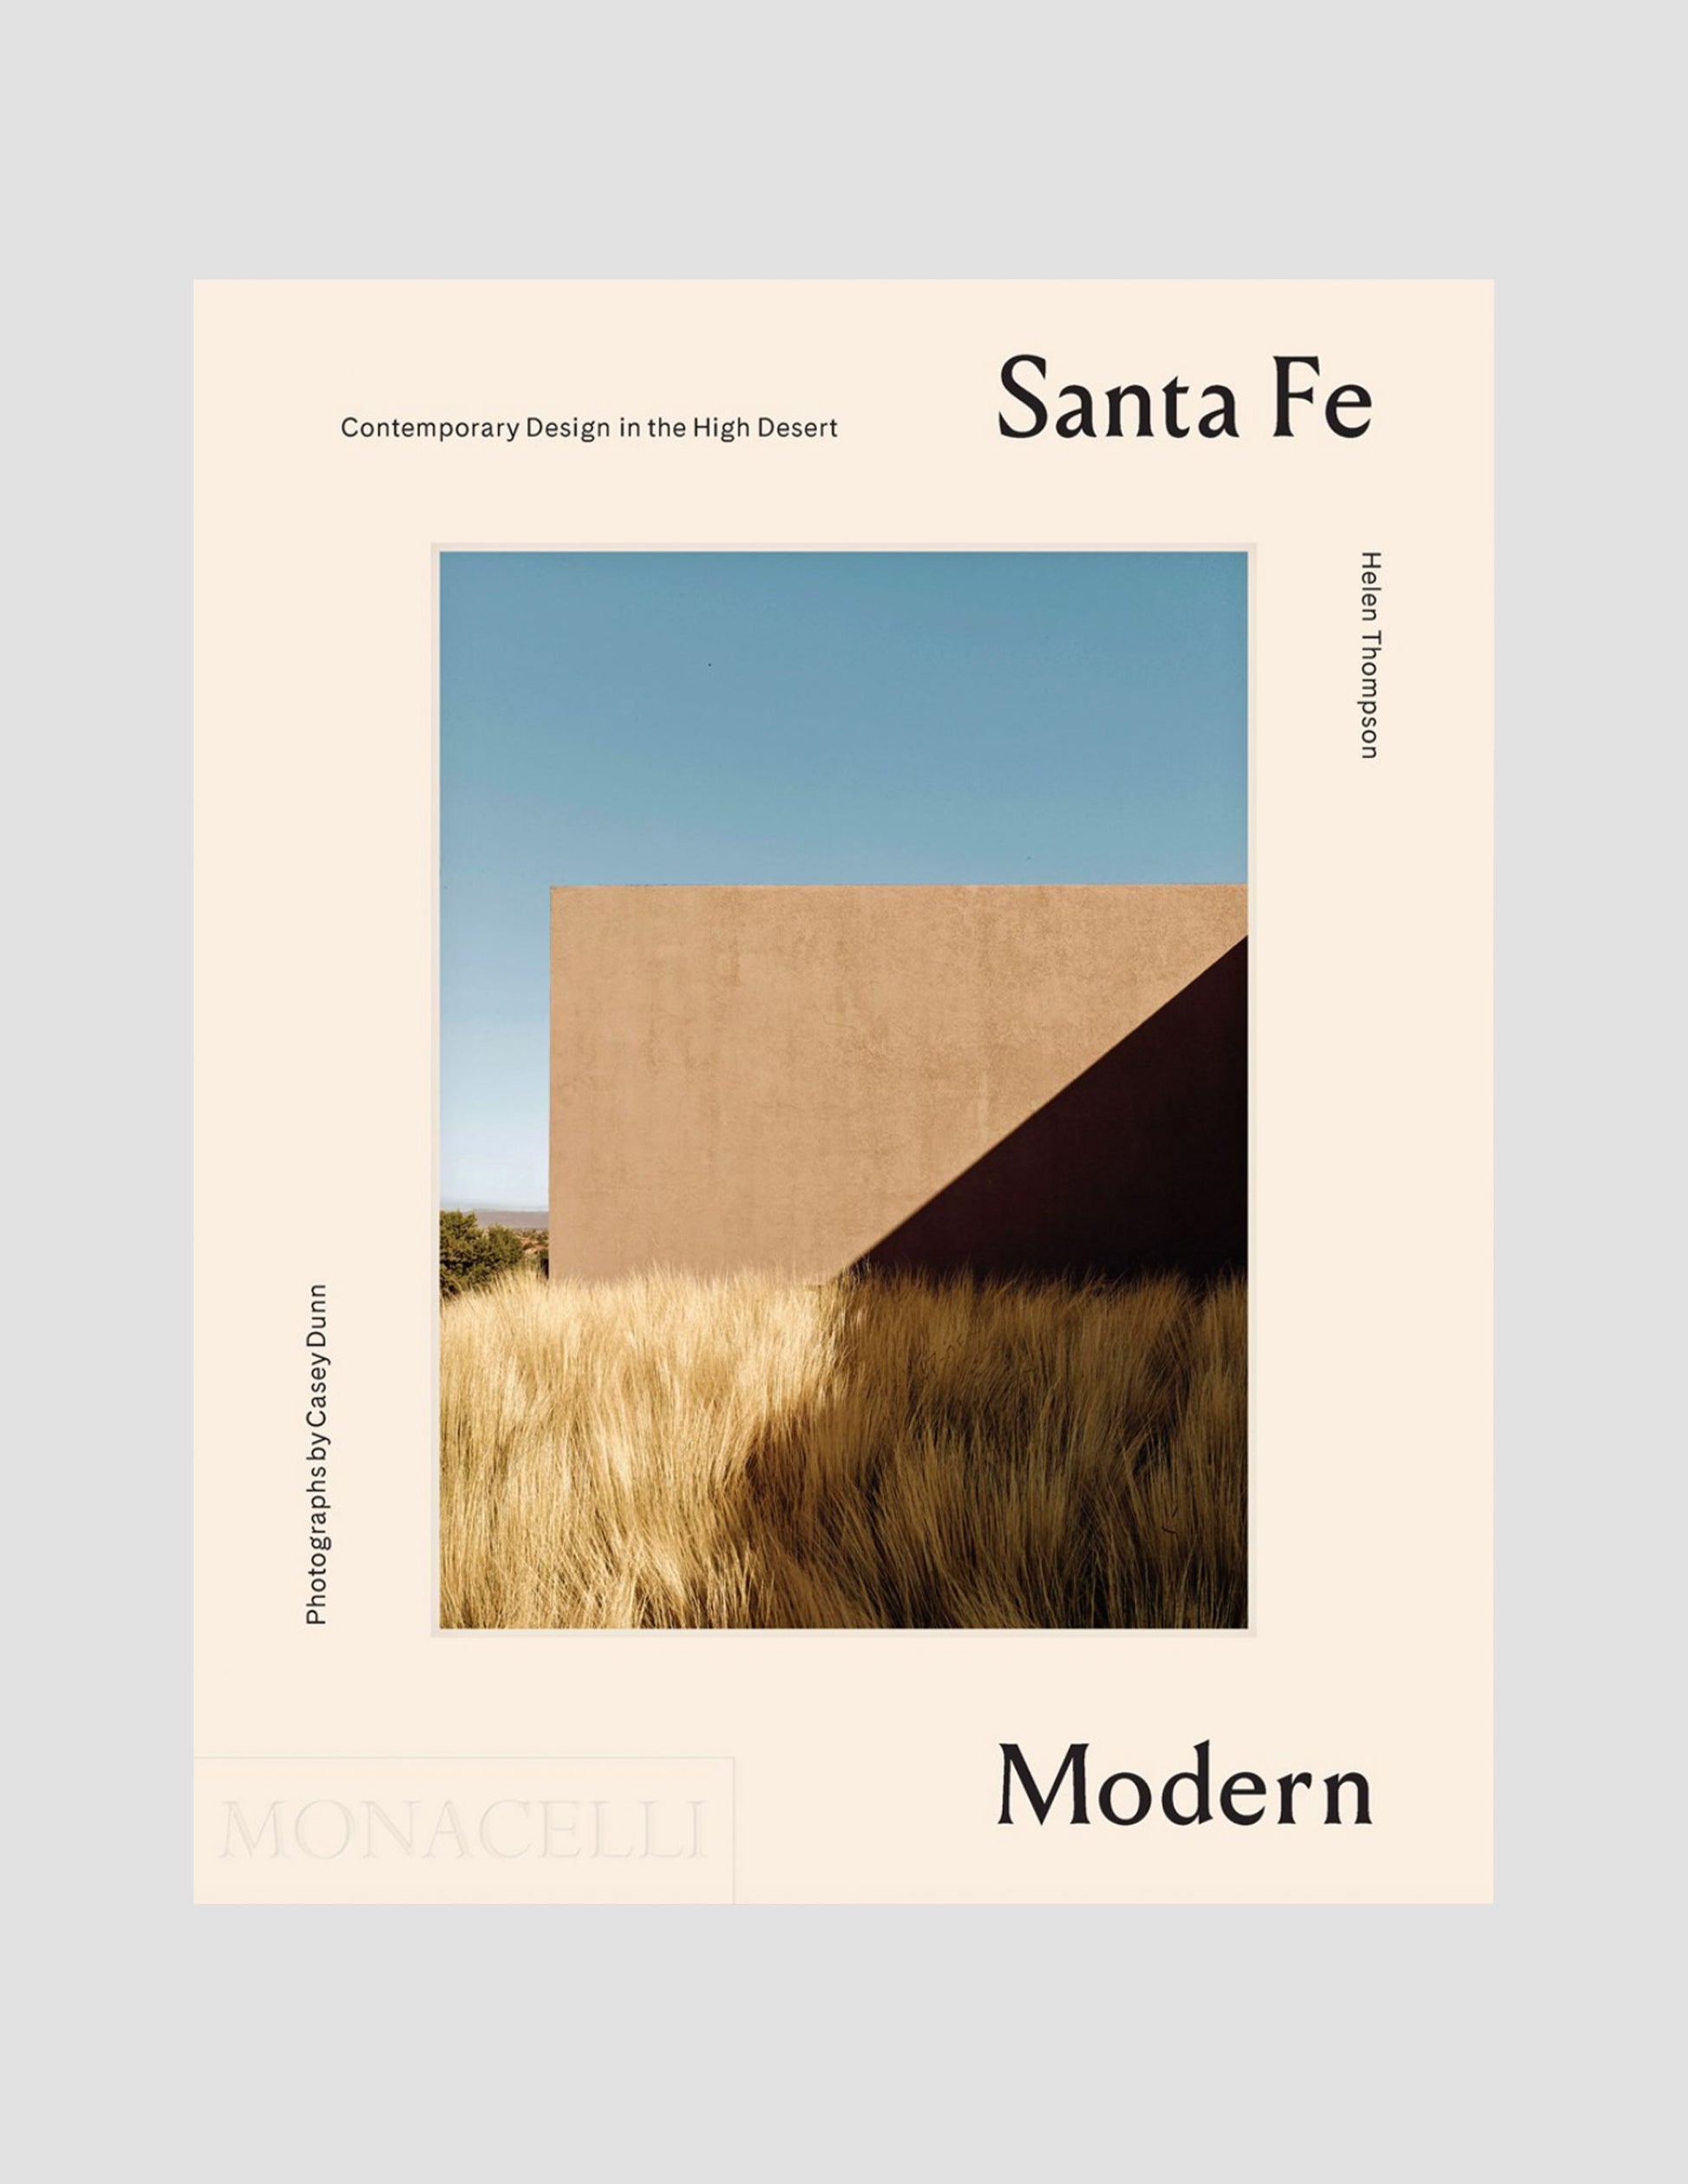 Santa Fe Modern